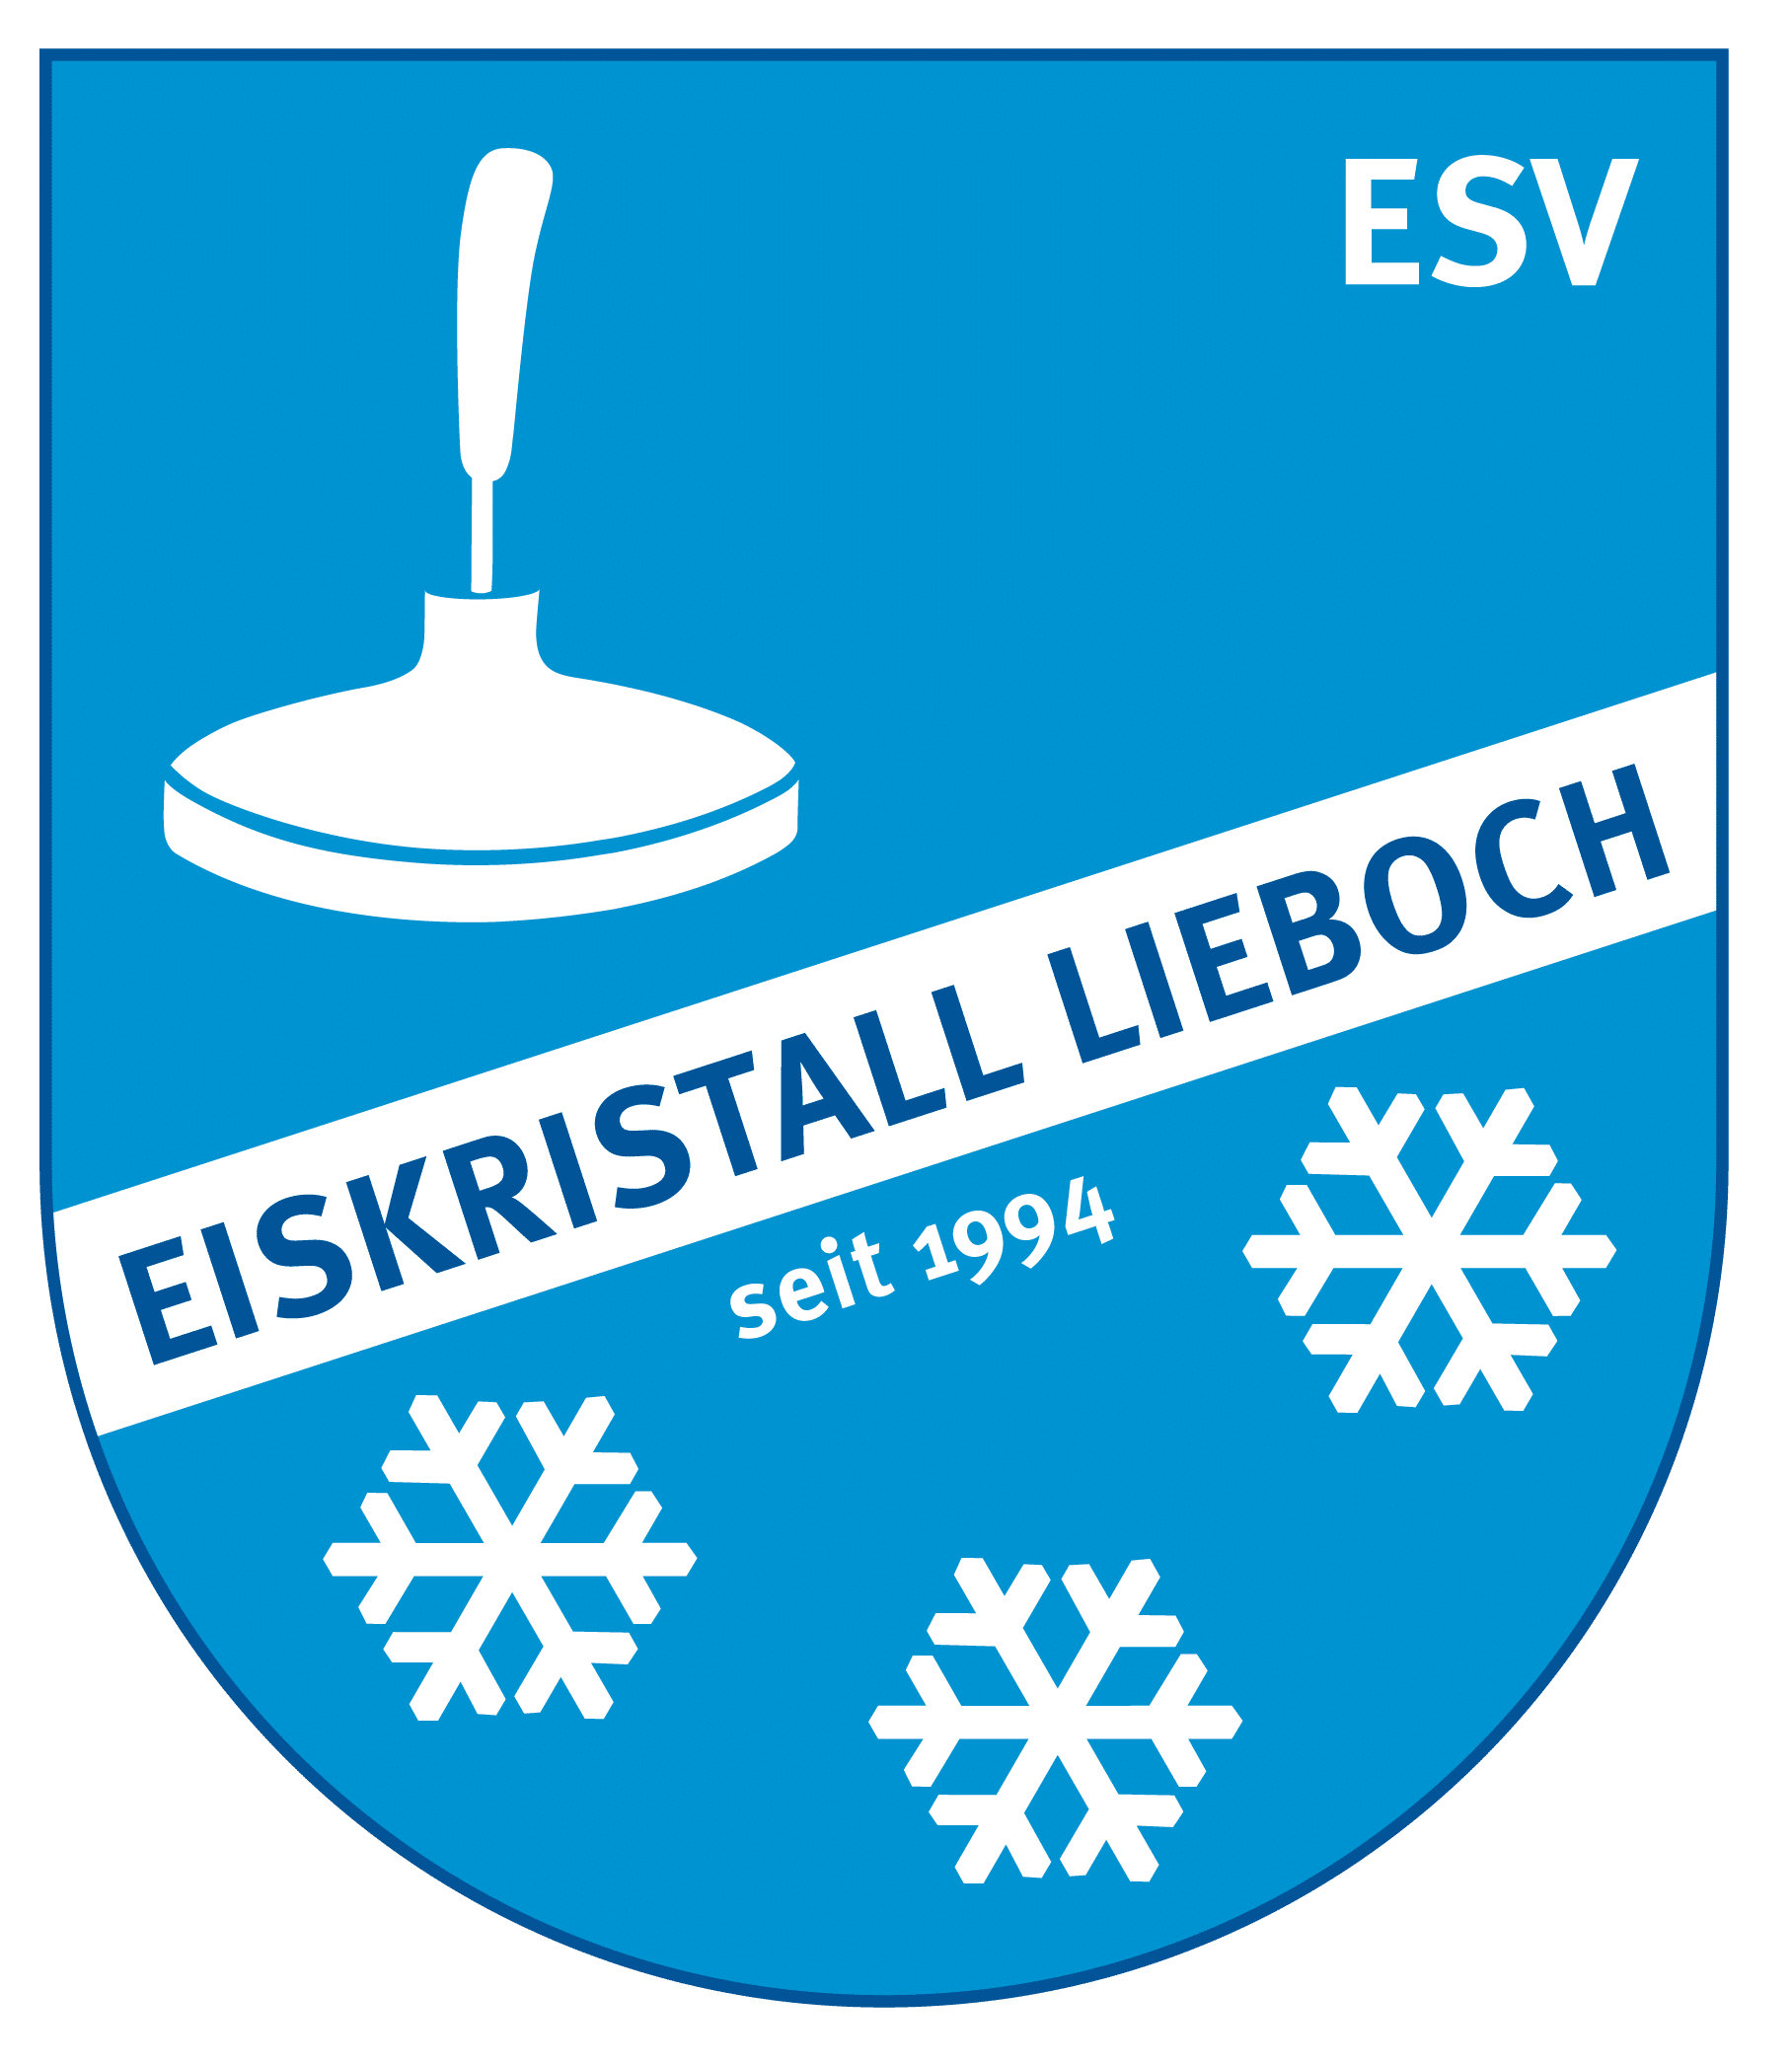 Logo ESV Eiskristall LIEBOCH II